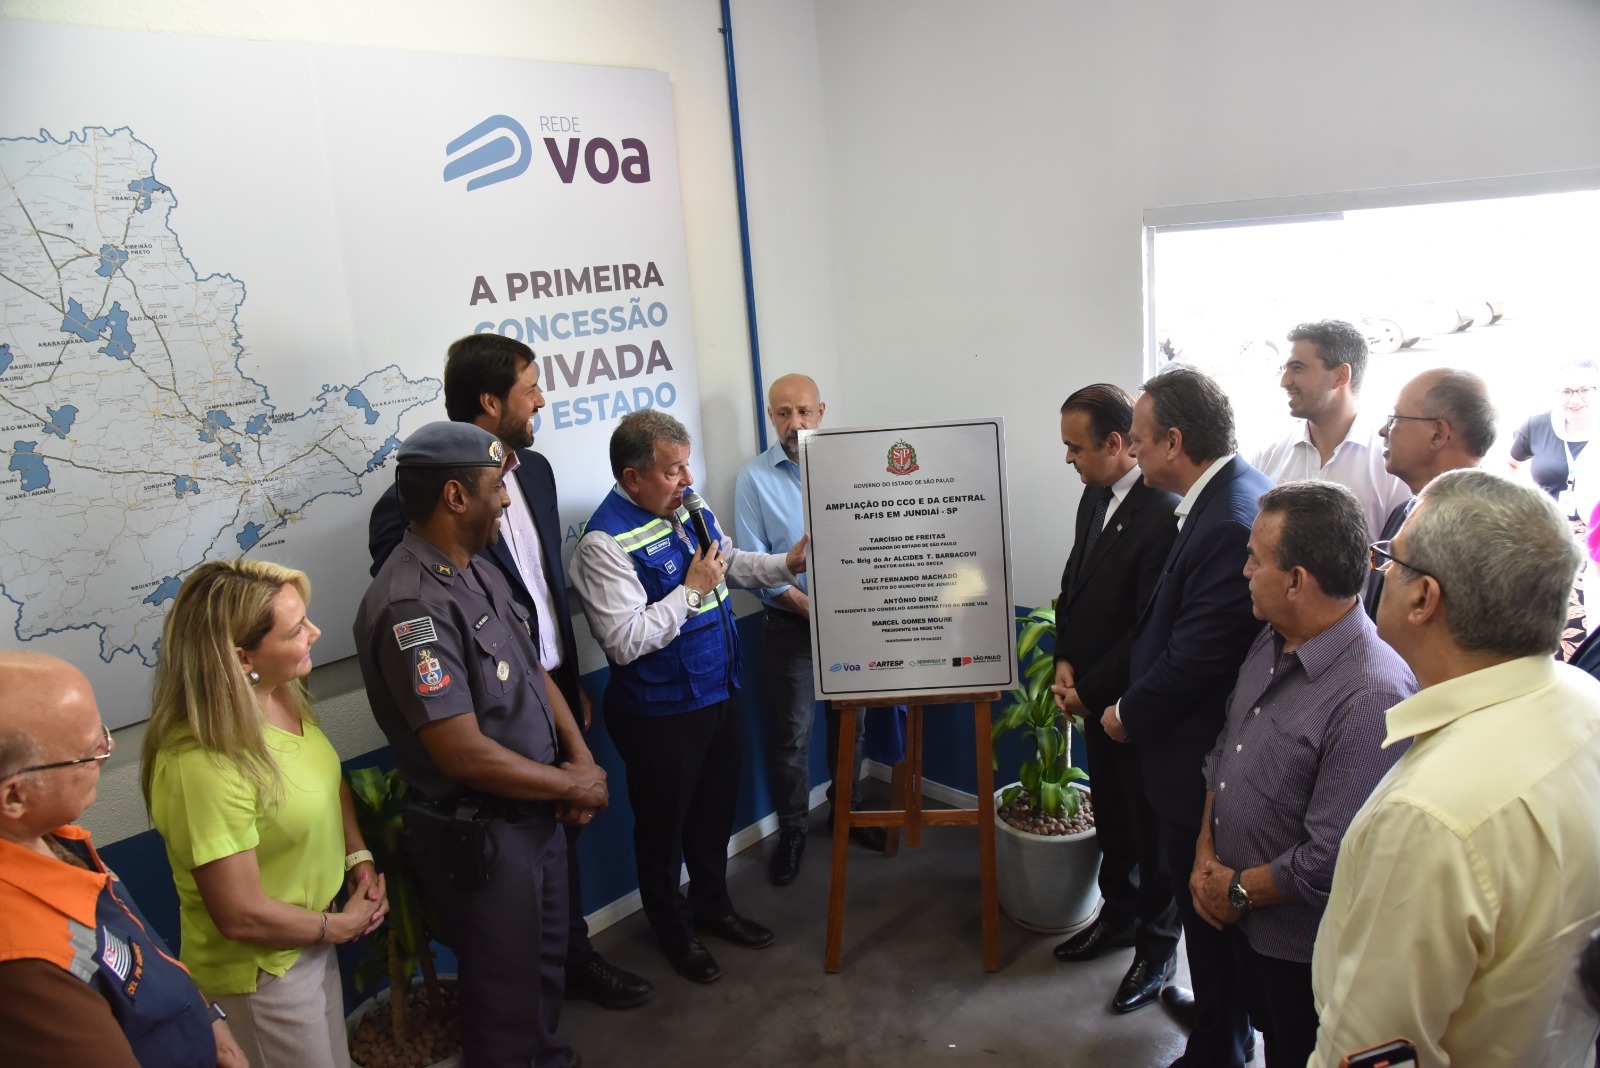 Rede VOA inaugura CCO em Jundiaí para controlar 16 aeroportos